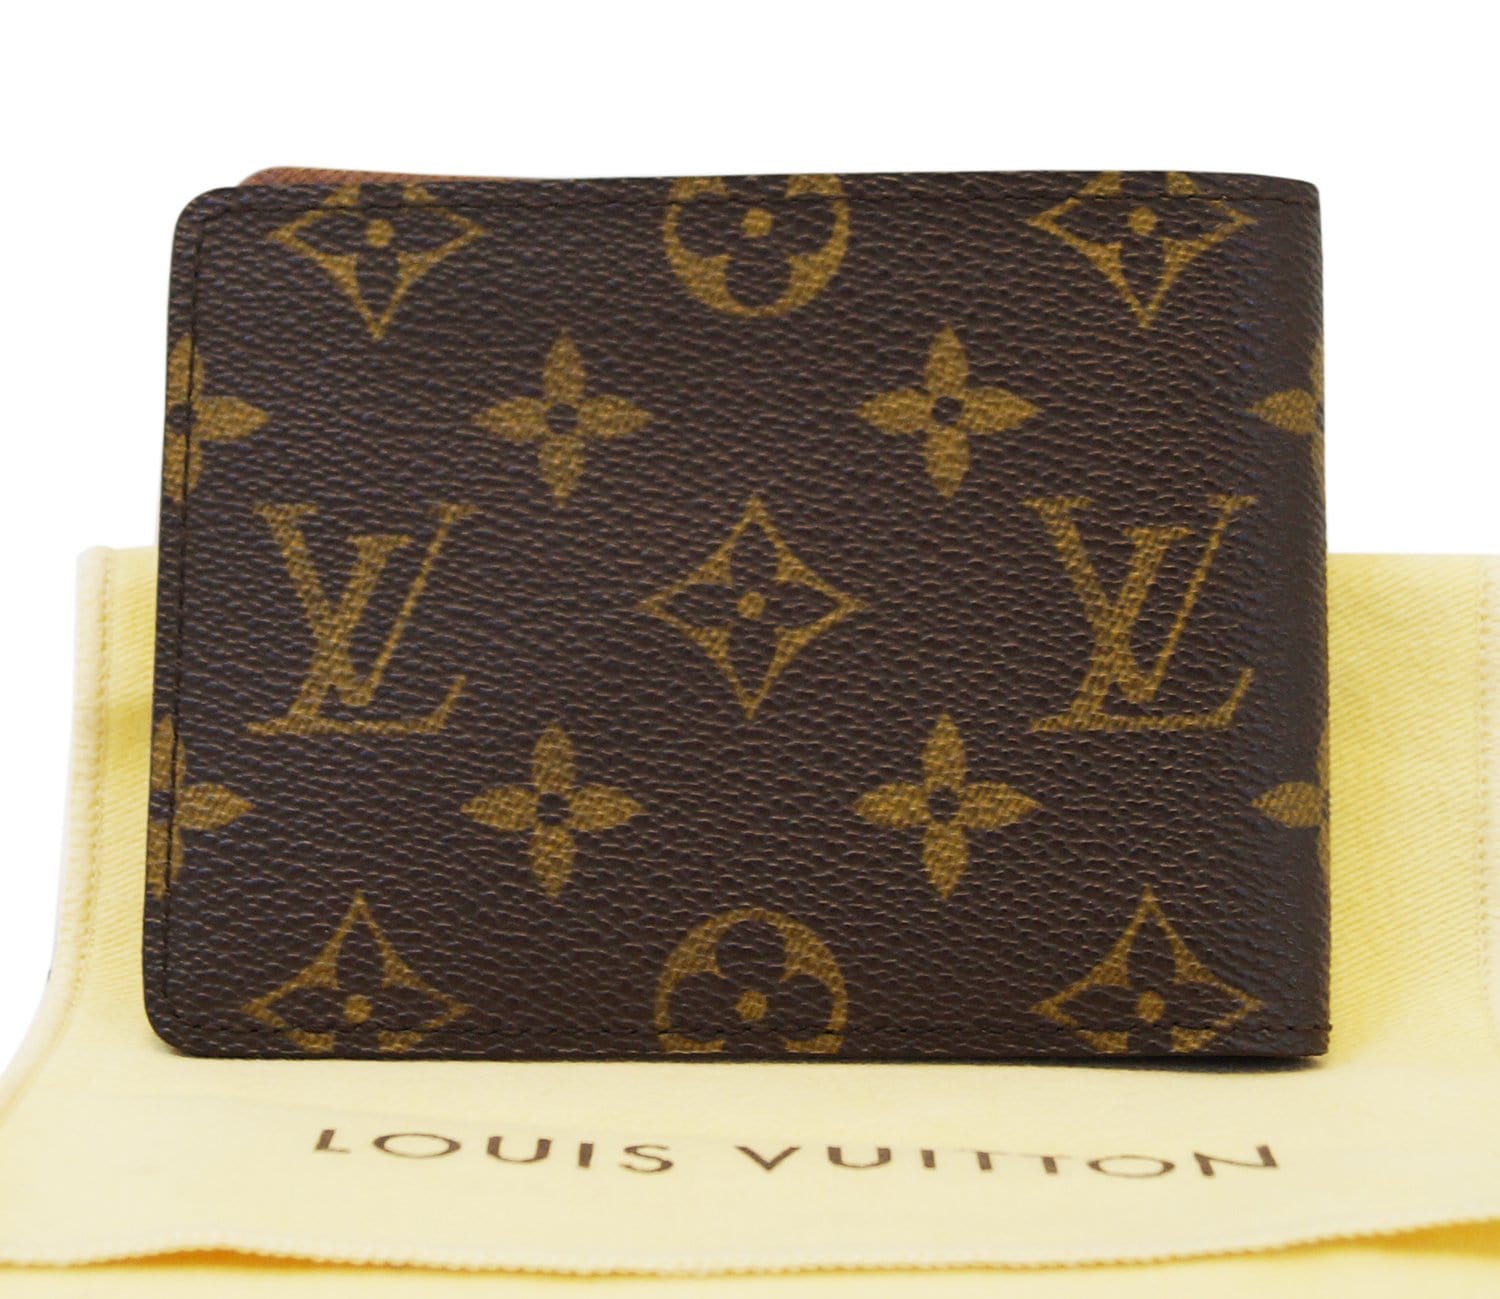 Сумка Mylockme BB Louis Vuitton (Луи Виттон Майлокми) — купить в